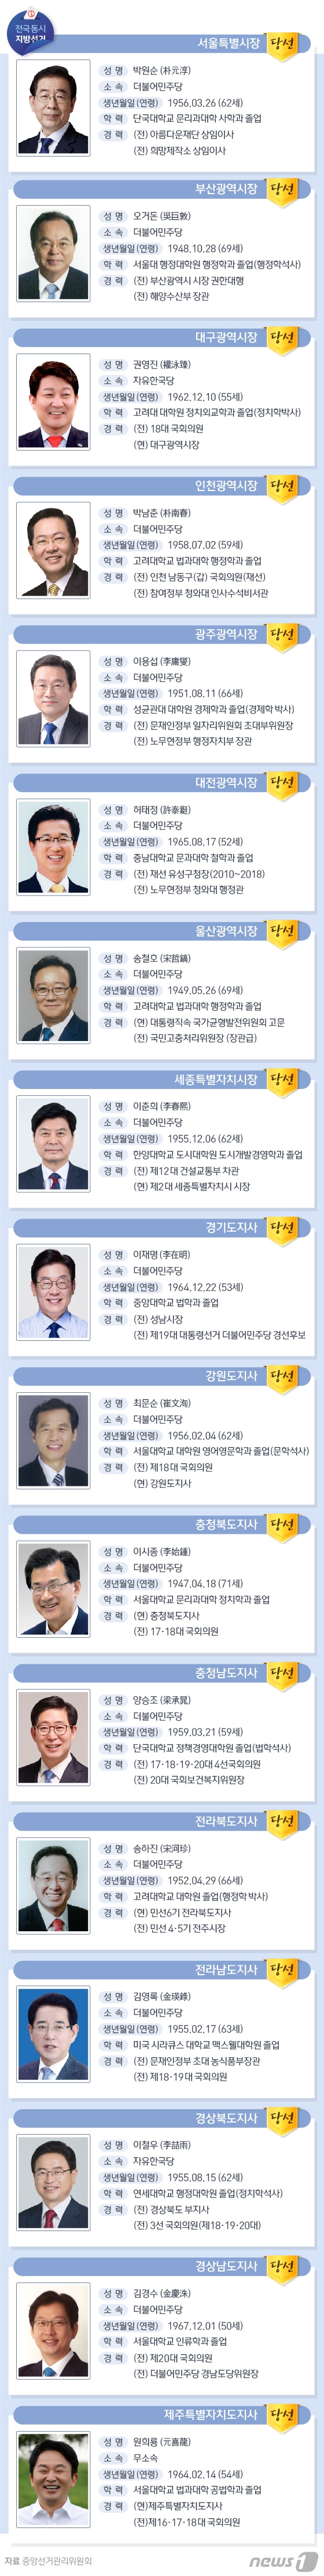 [그래픽뉴스] 광역단체장 당선자 프로필